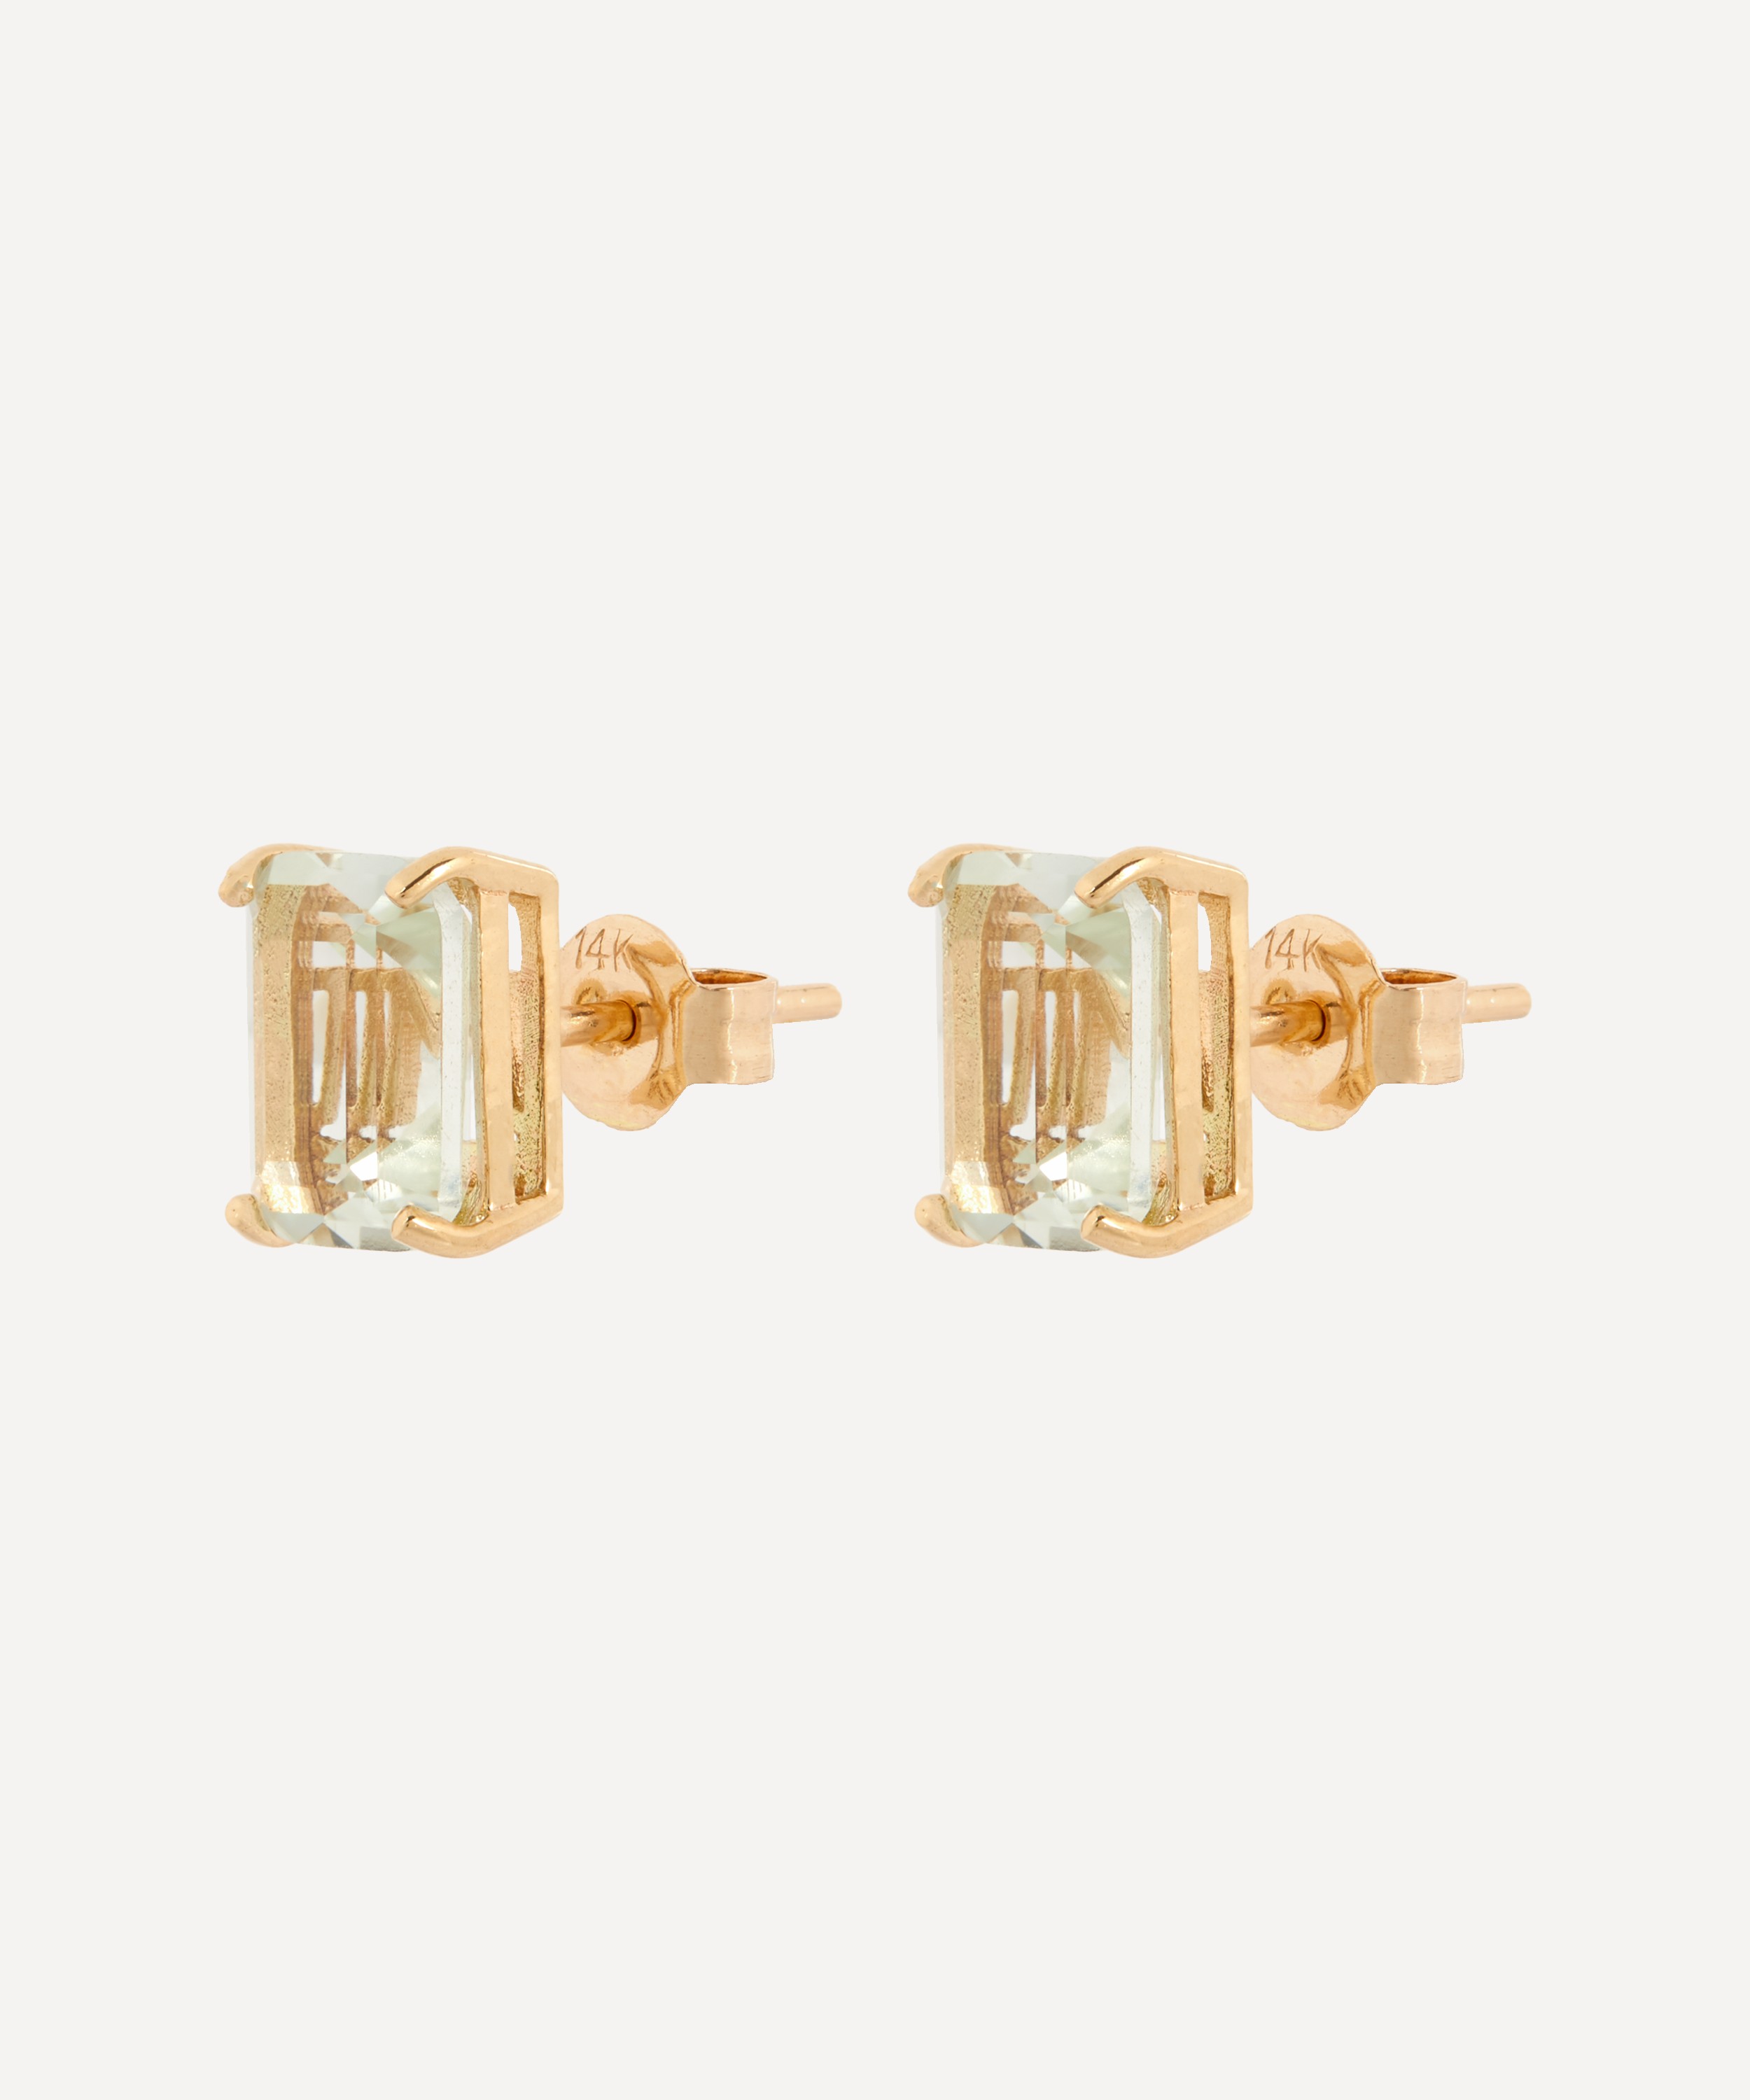 Shop Online Natural Amethyst Stud Earring 14k Gold